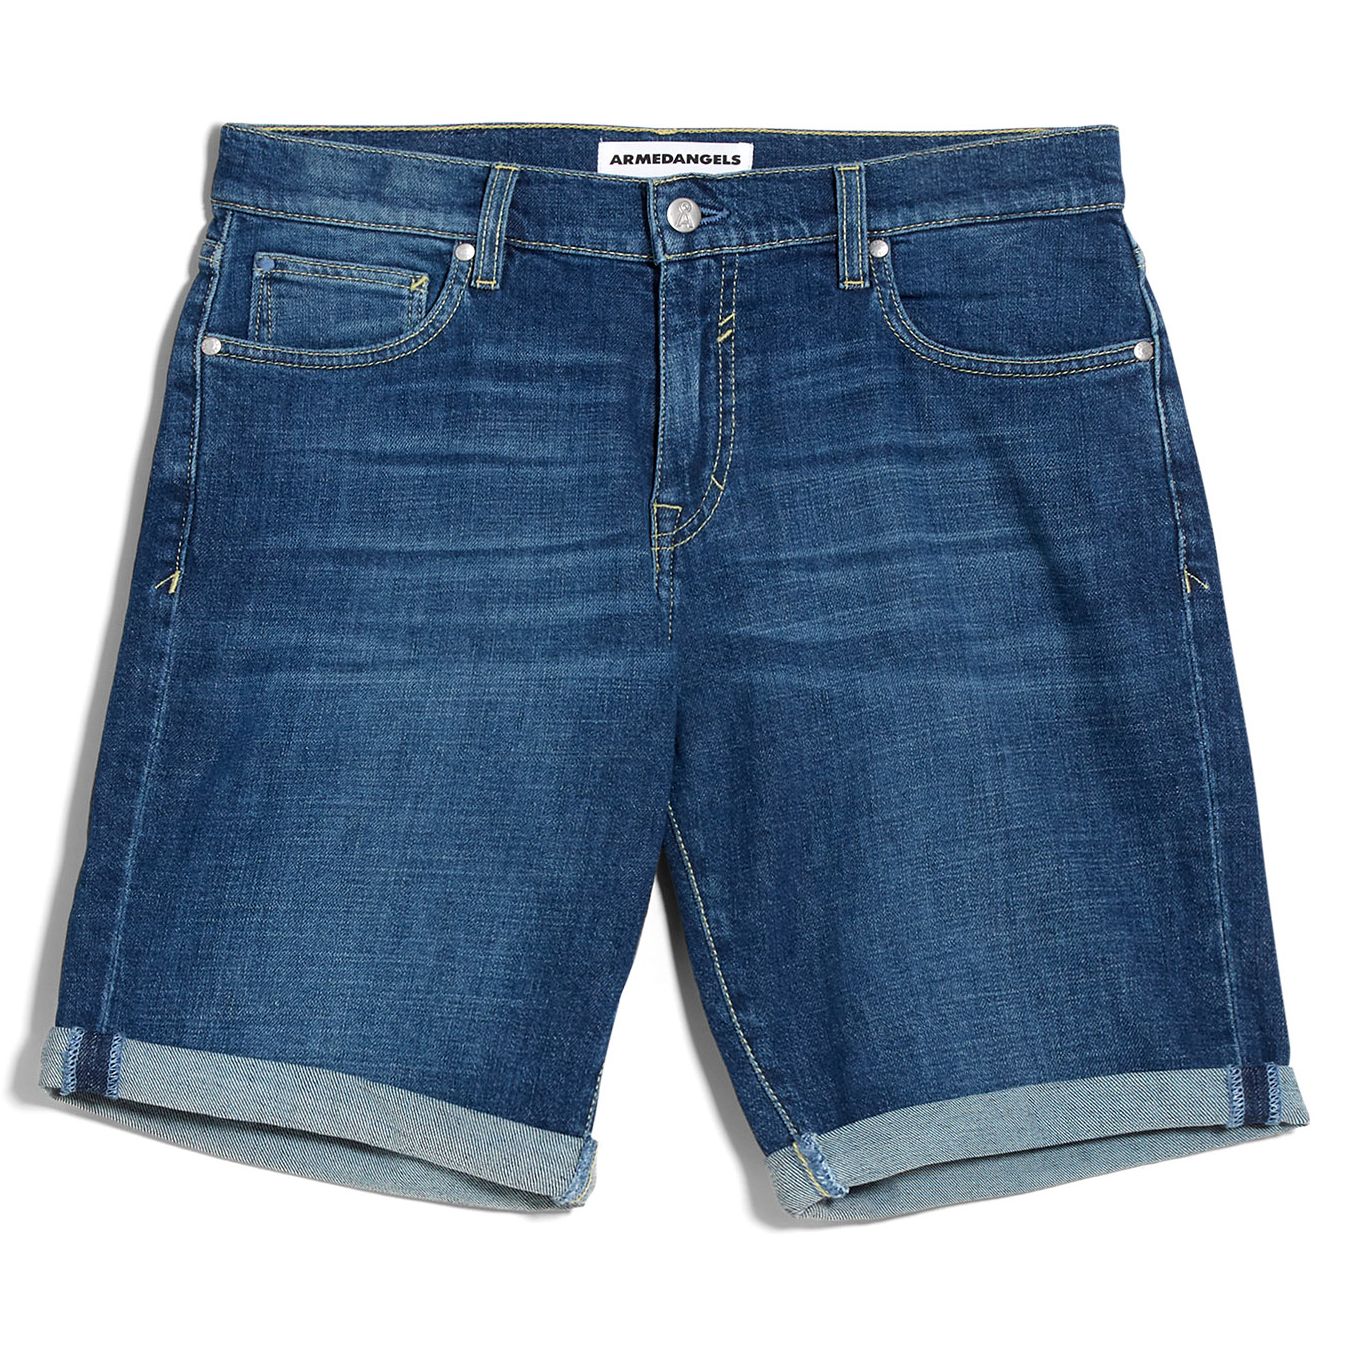 Jeans-Shorts NAAIL HEMP dark mud blue